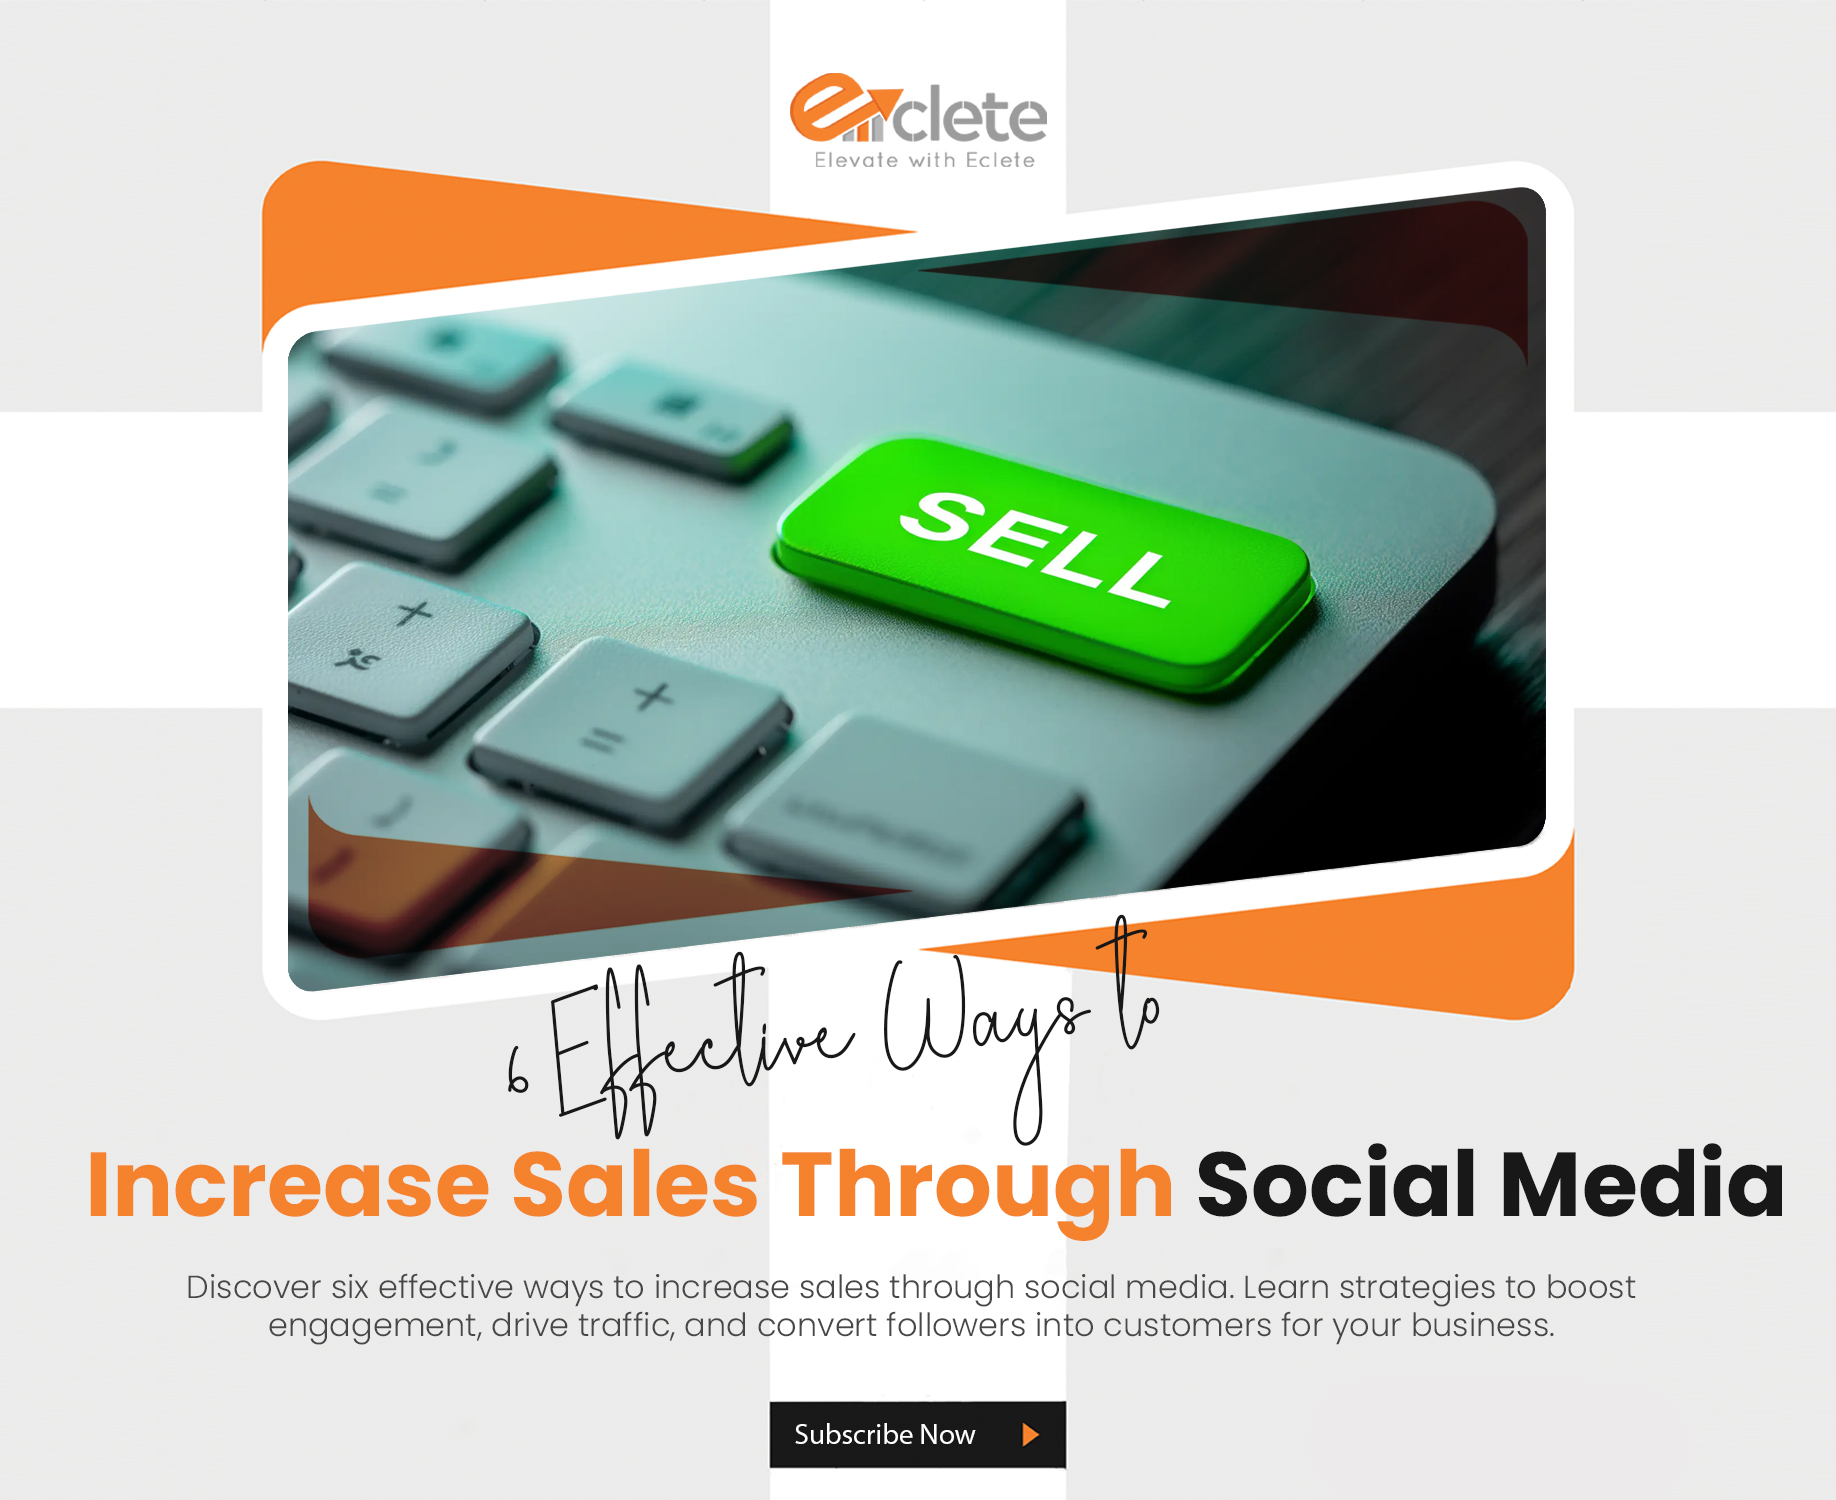 Increase sales through social media